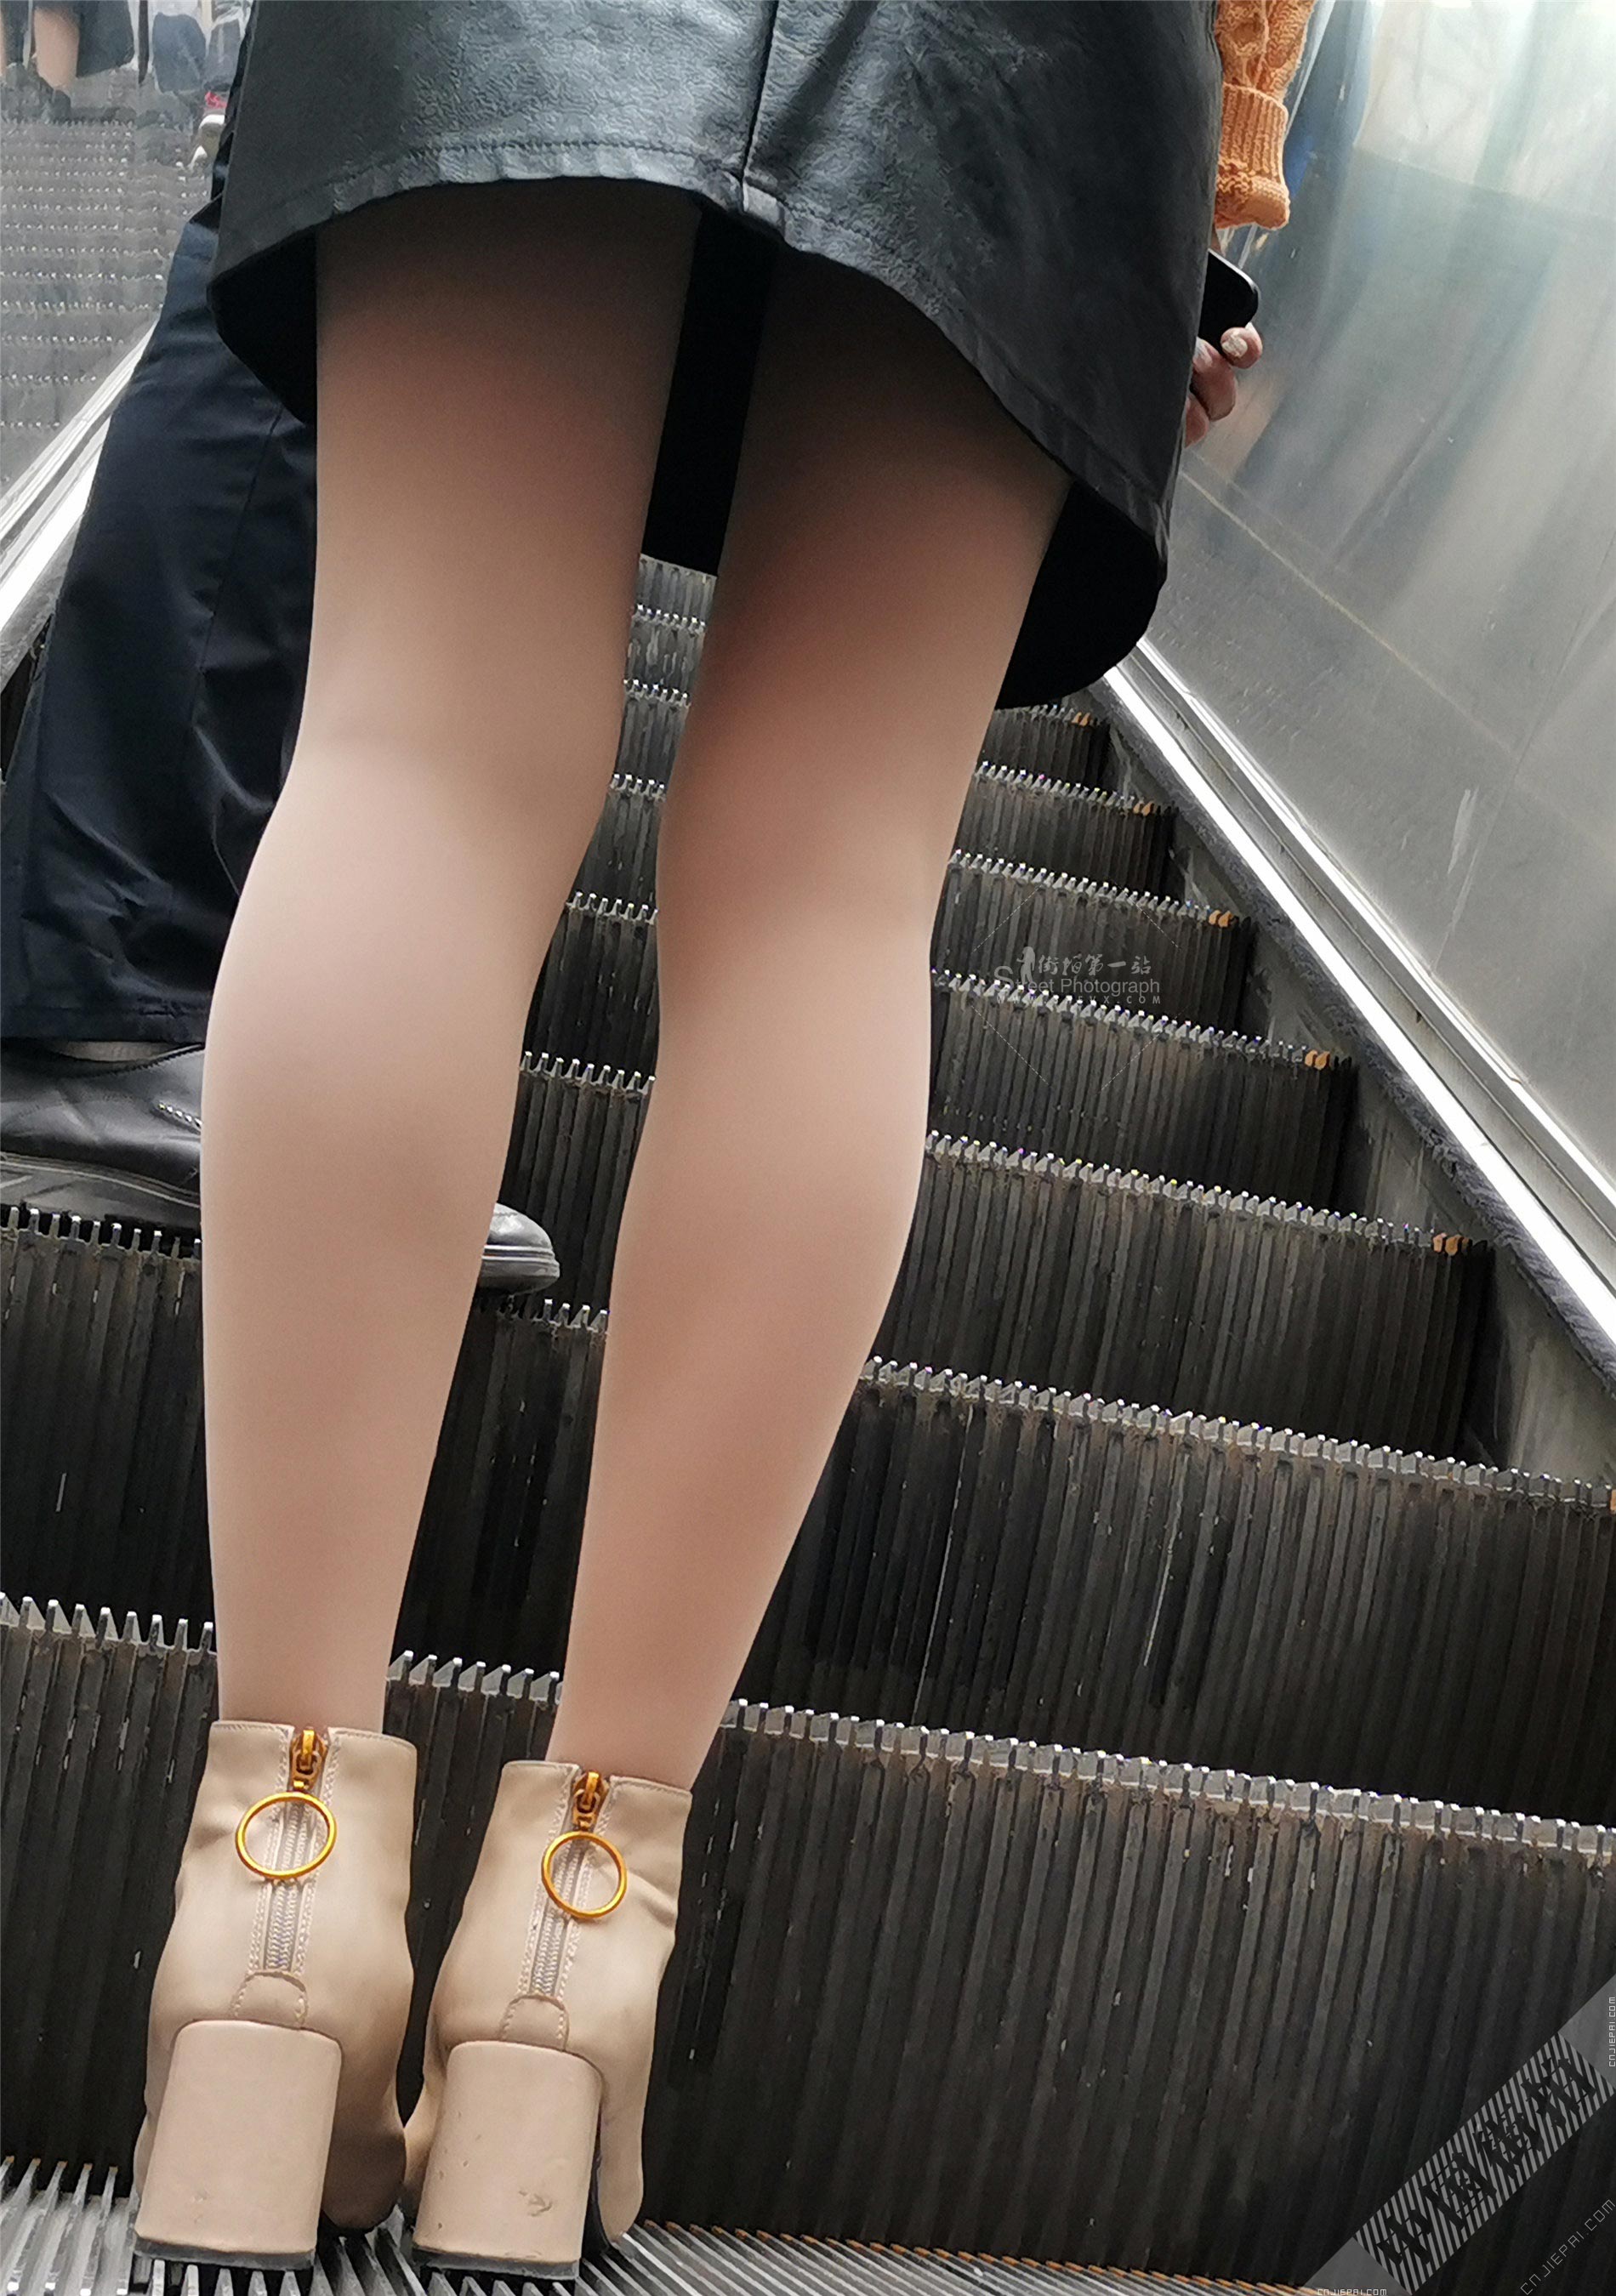 抓拍电梯上厚肉丝少妇光滑的双腿 图1